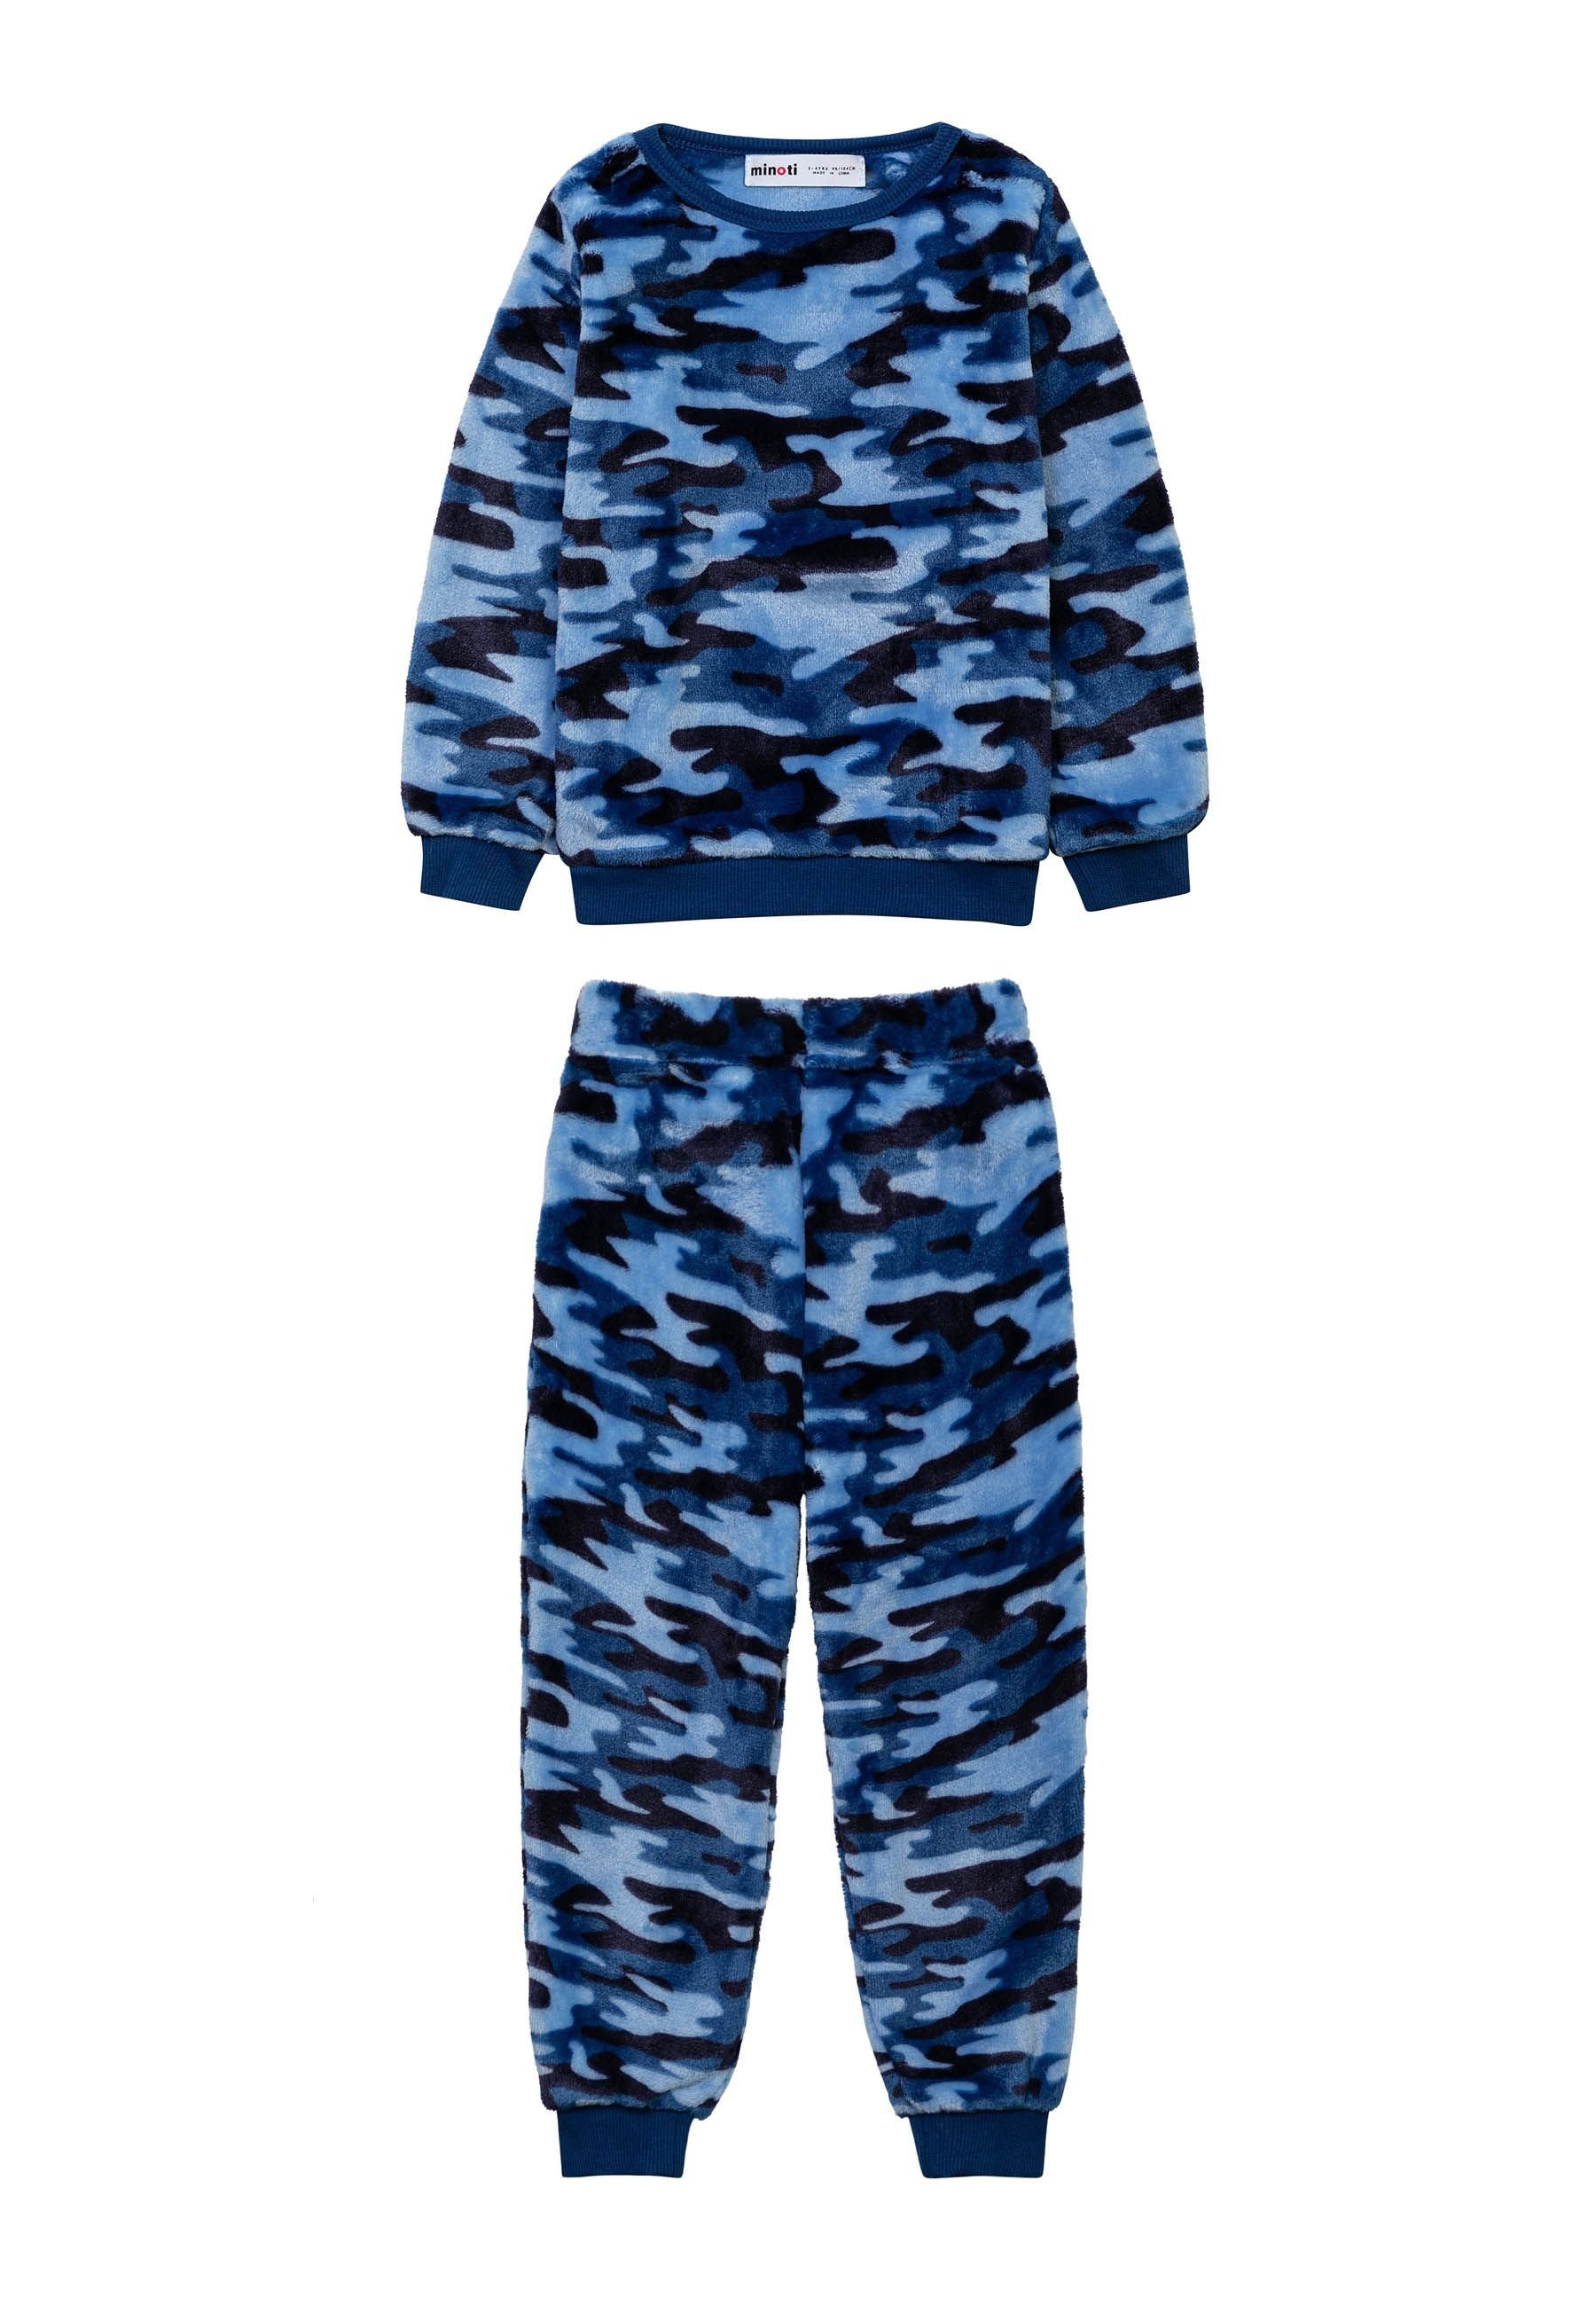 Blau MINOTI Meliert aus Fleece Schlafanzug Schlafanzug-Set (1y-8y) kuscheligem